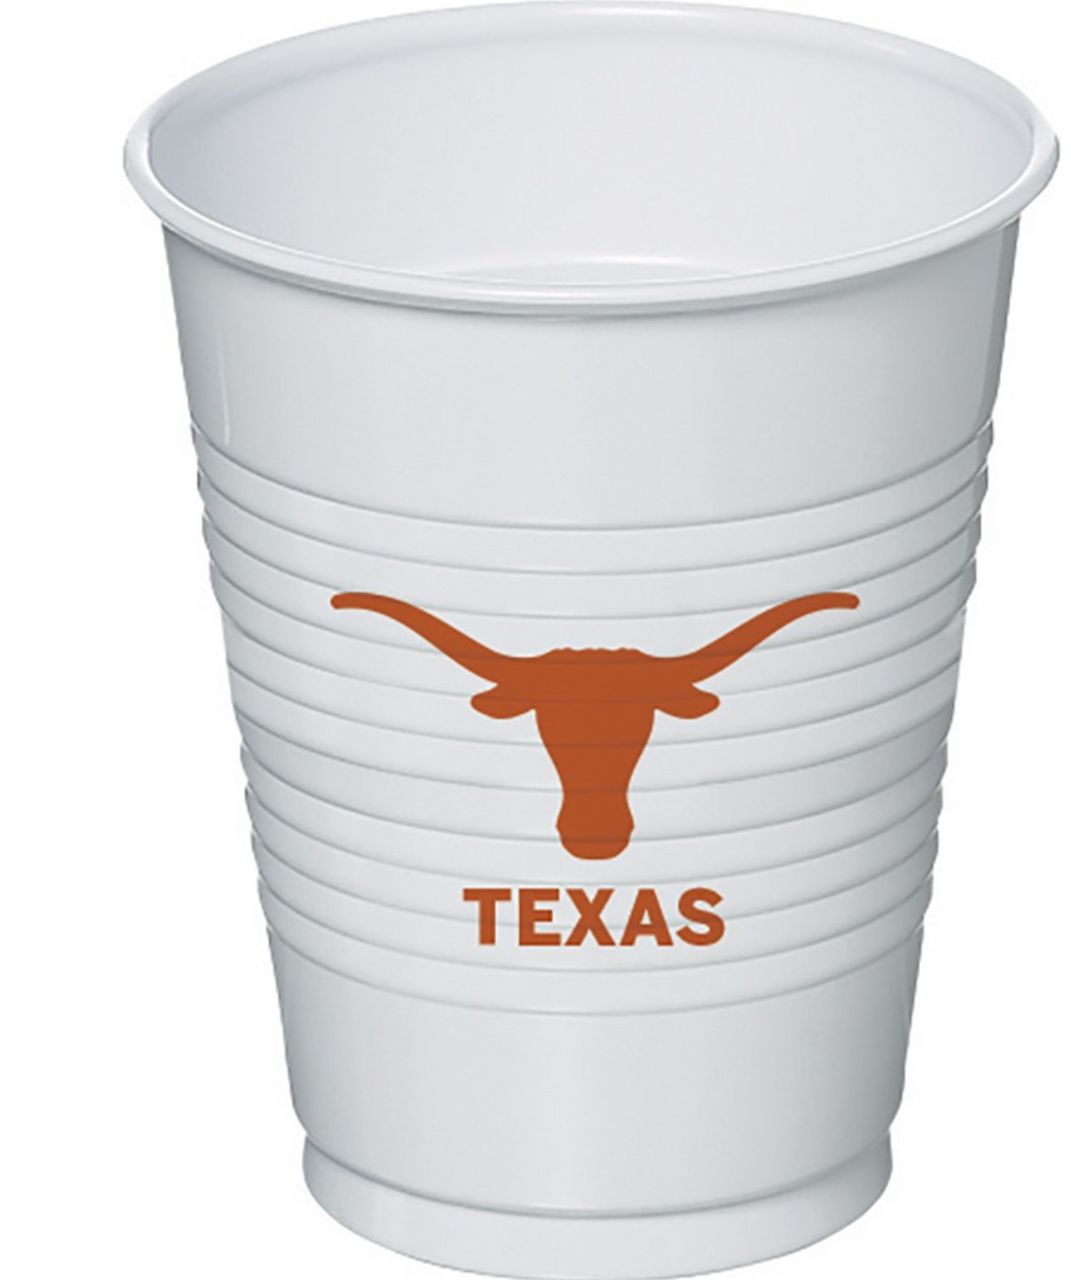 Texas Tech 16 oz. styrofoam cups – Paddle Tramps